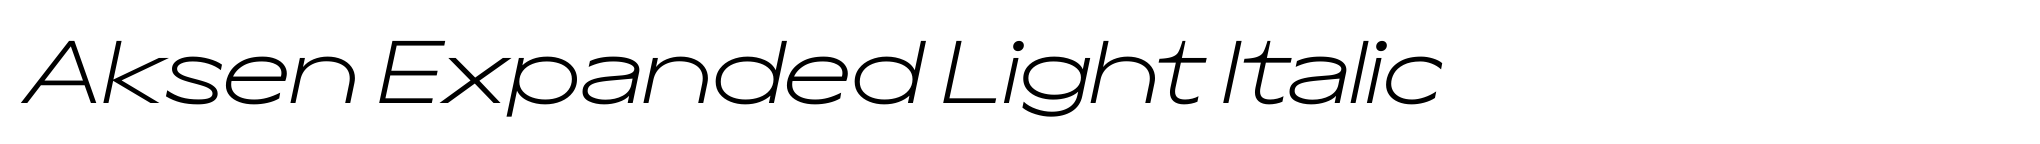 Aksen Expanded Light Italic image